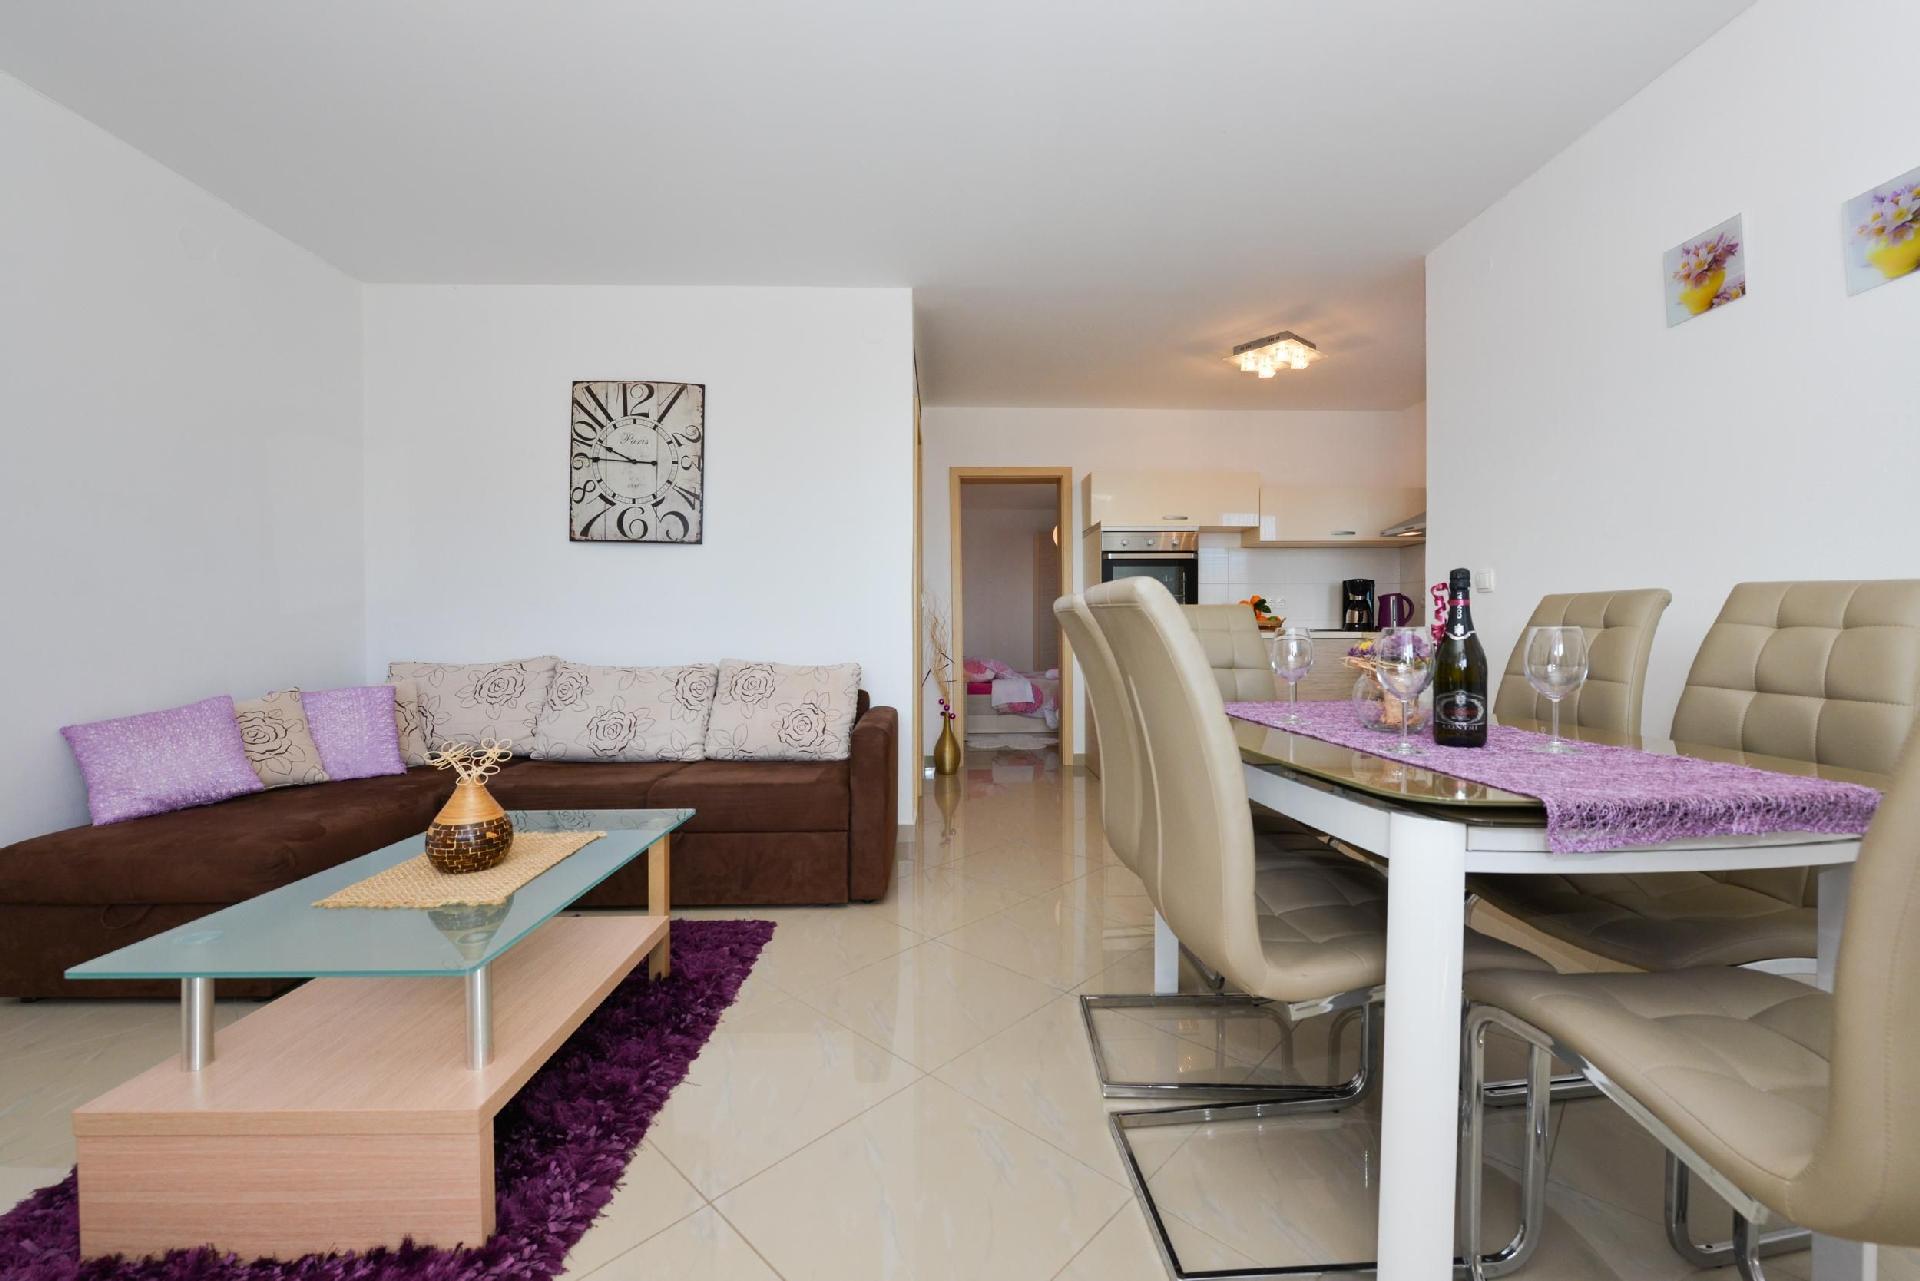 Ferienwohnung für 5 Personen ca. 43 m² i Ferienhaus in Kroatien